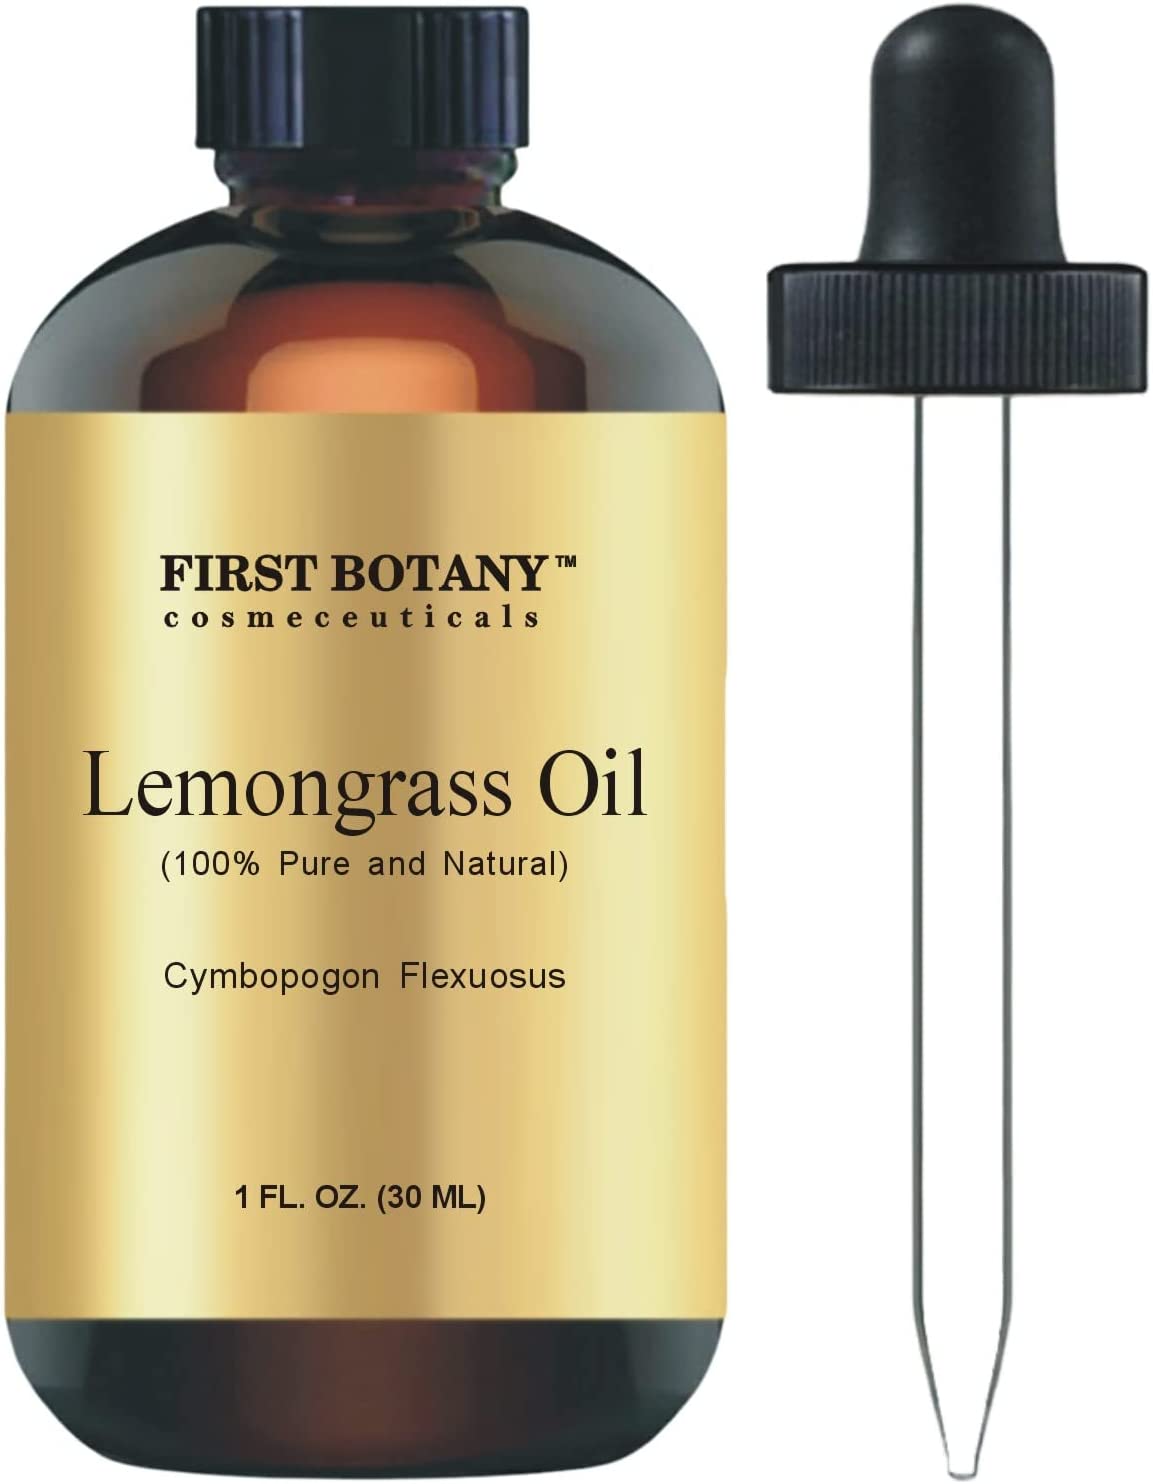 Lemongrass (Organic) Essential Oil 1 oz.